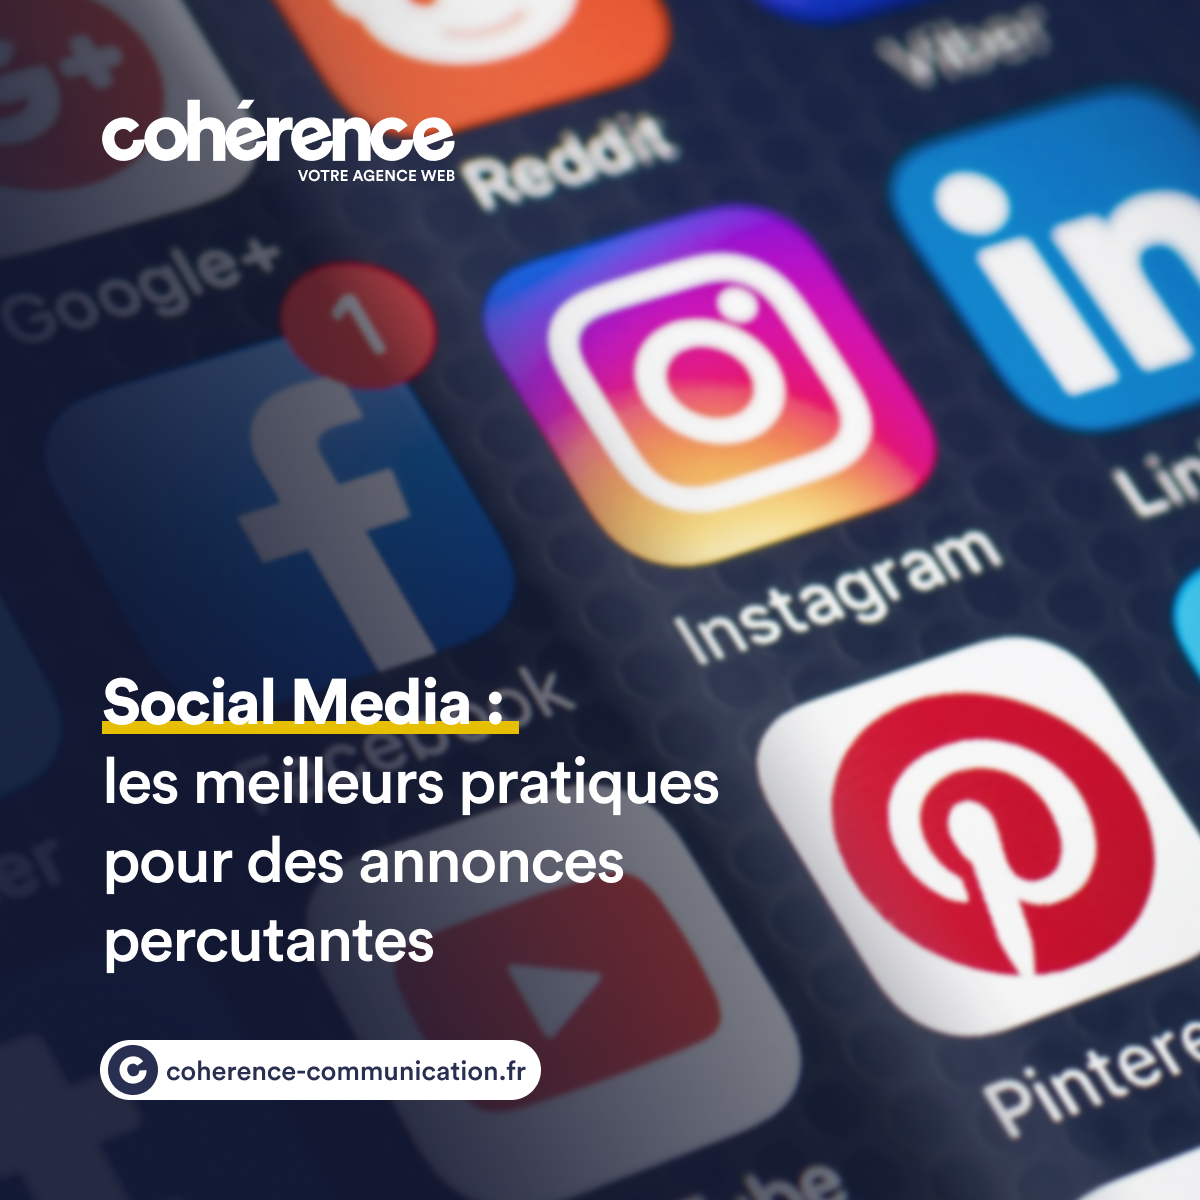 Coherence Agence Web A Rennes Social Media Les Meilleures Pratiques Pour Des Annonces Percutantes